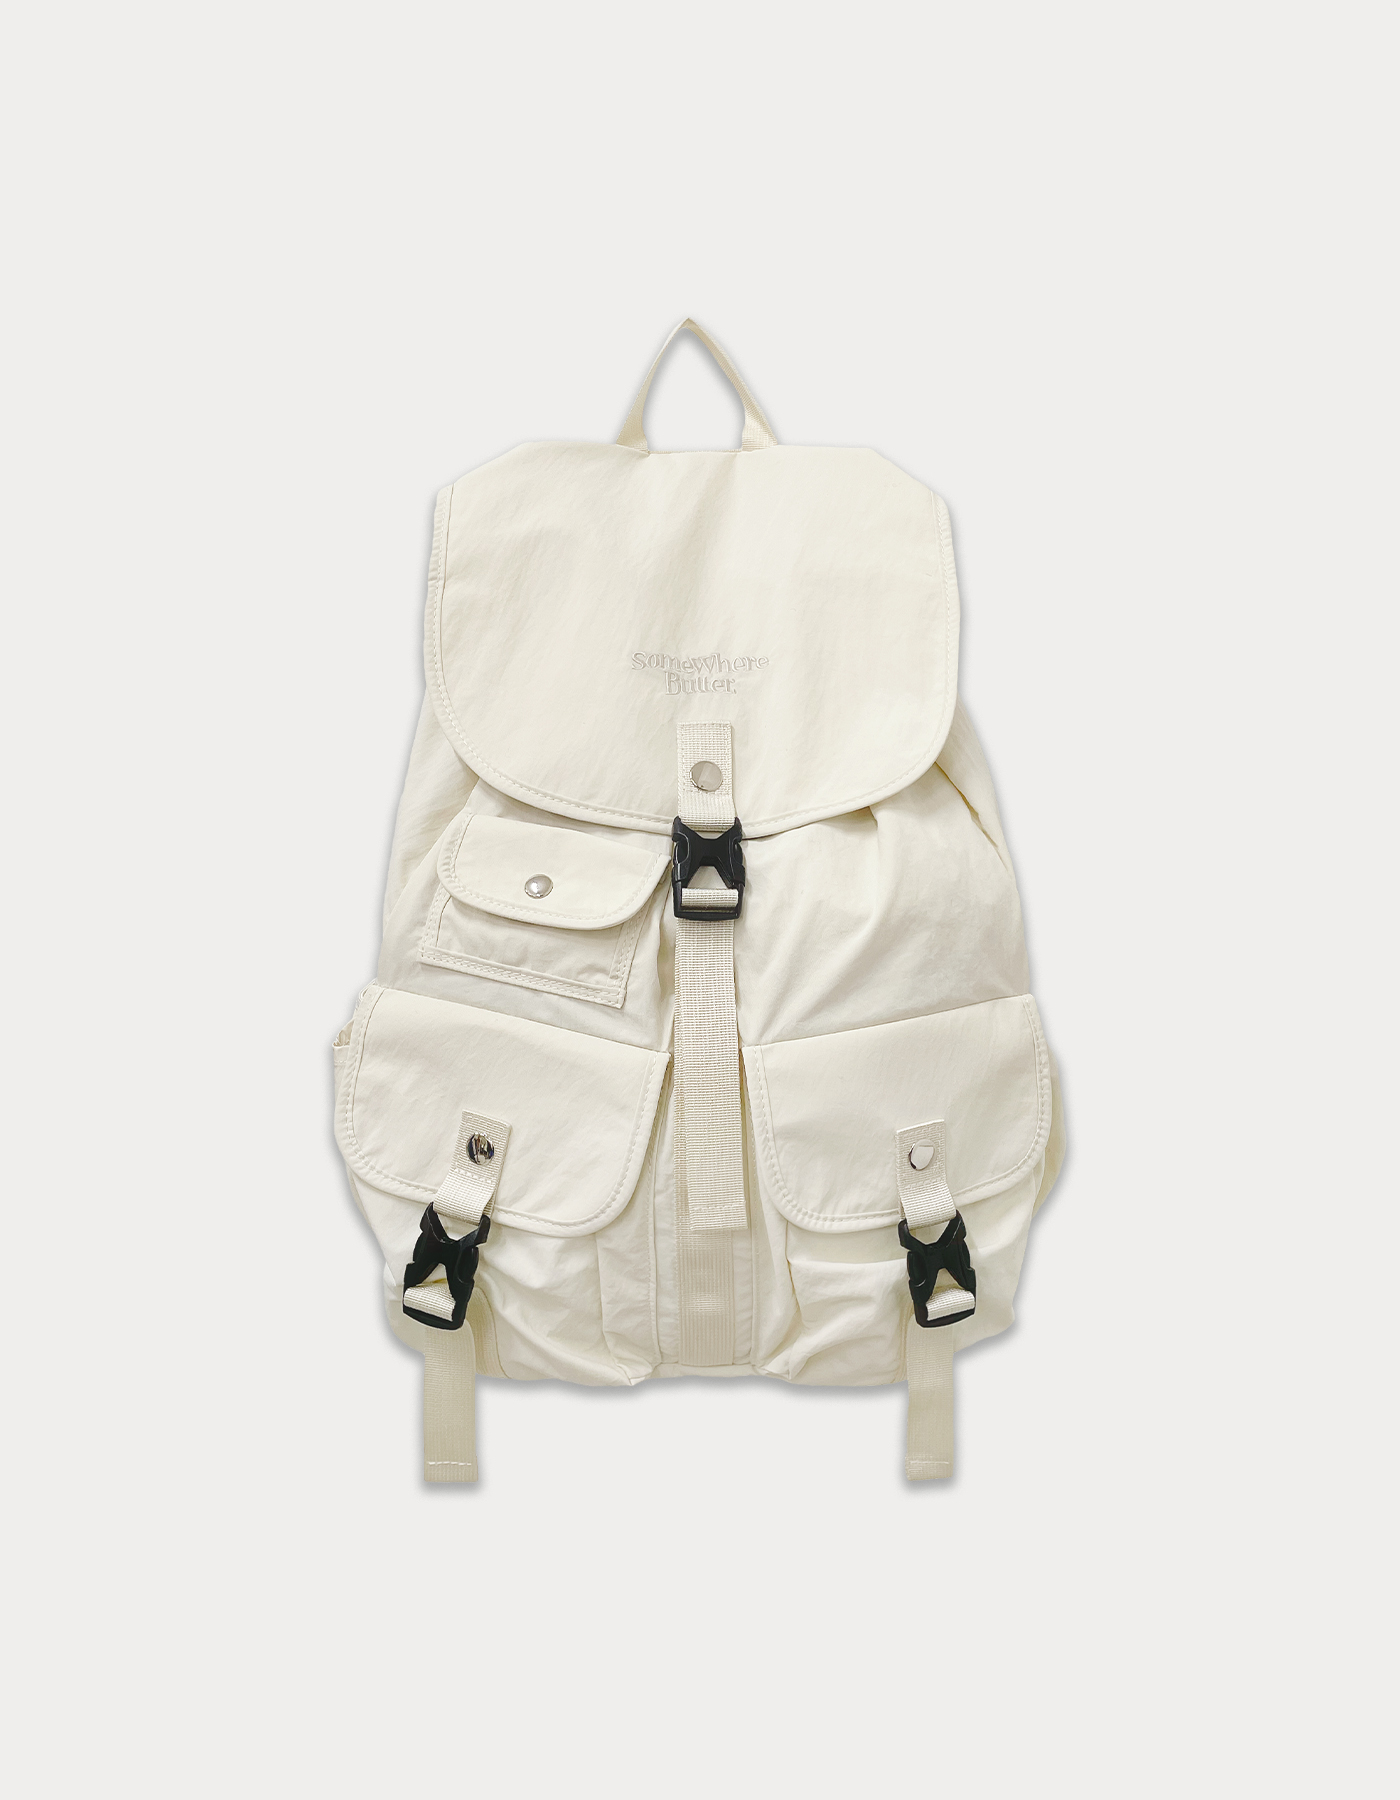 PP Backpack - cream